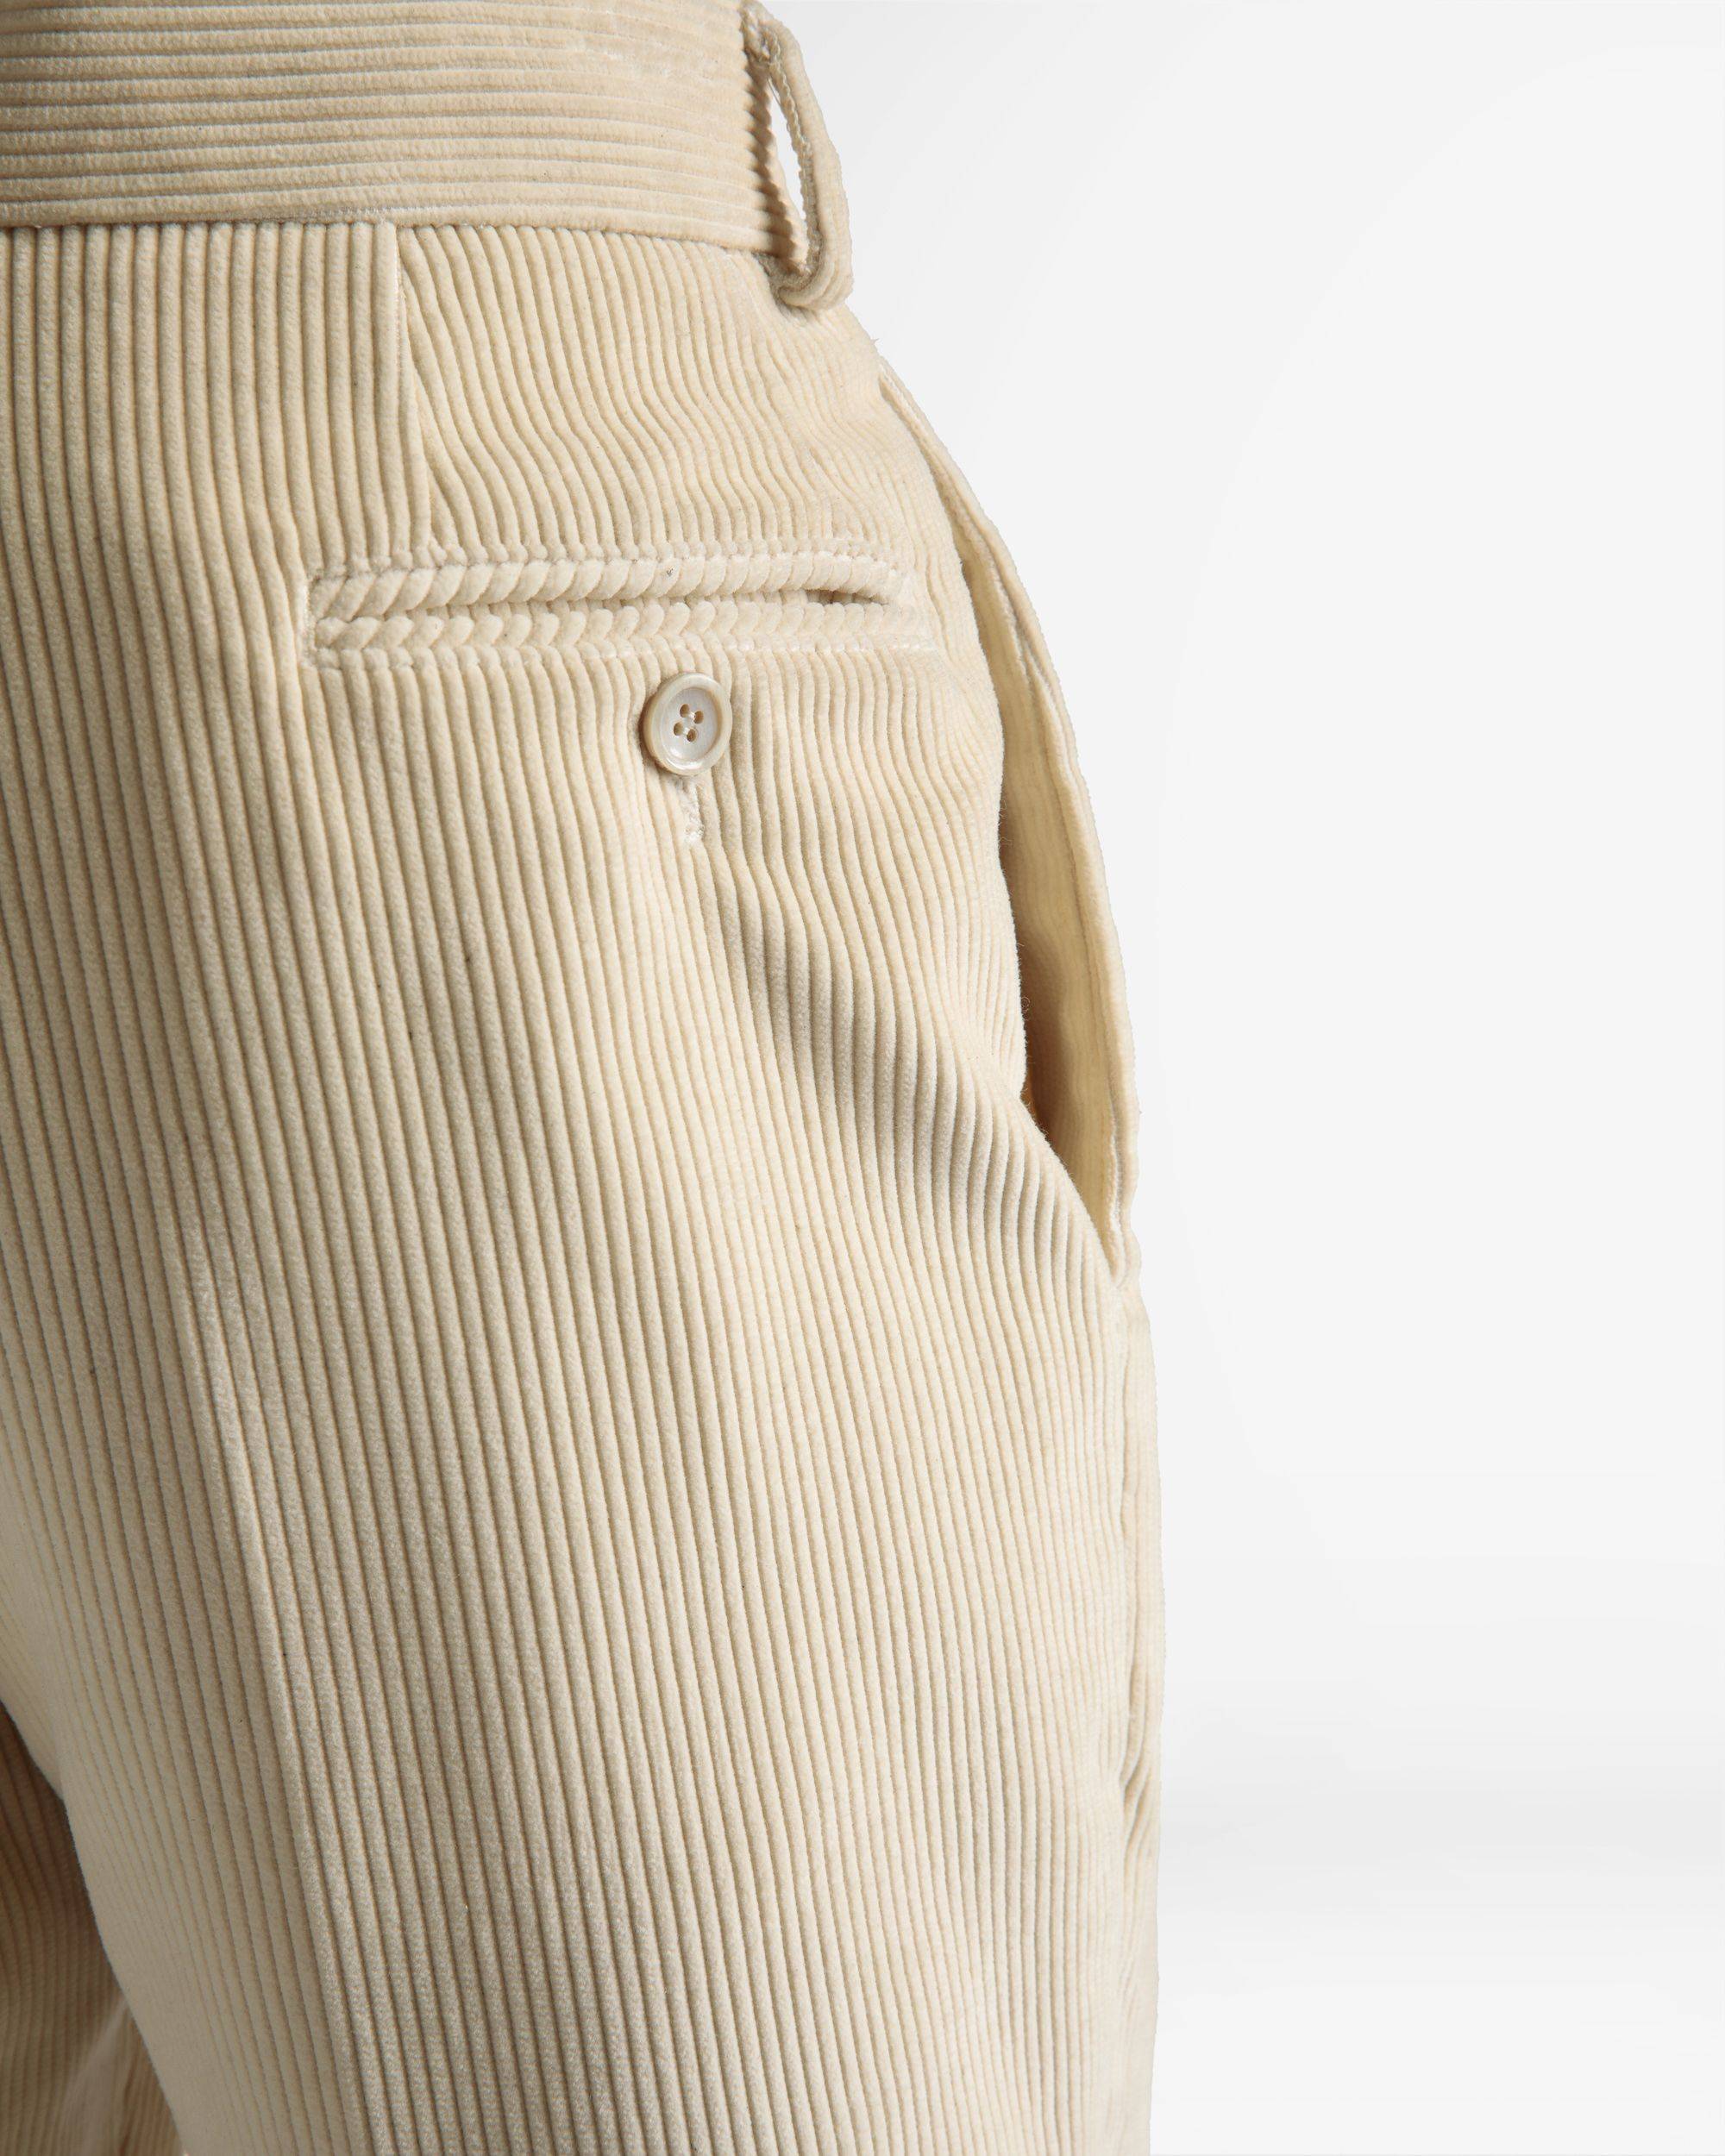 Formelle Hose mit geradem Bein | Hose für Herren | Wolle in Elfenbein | Bally | Model getragen Detail